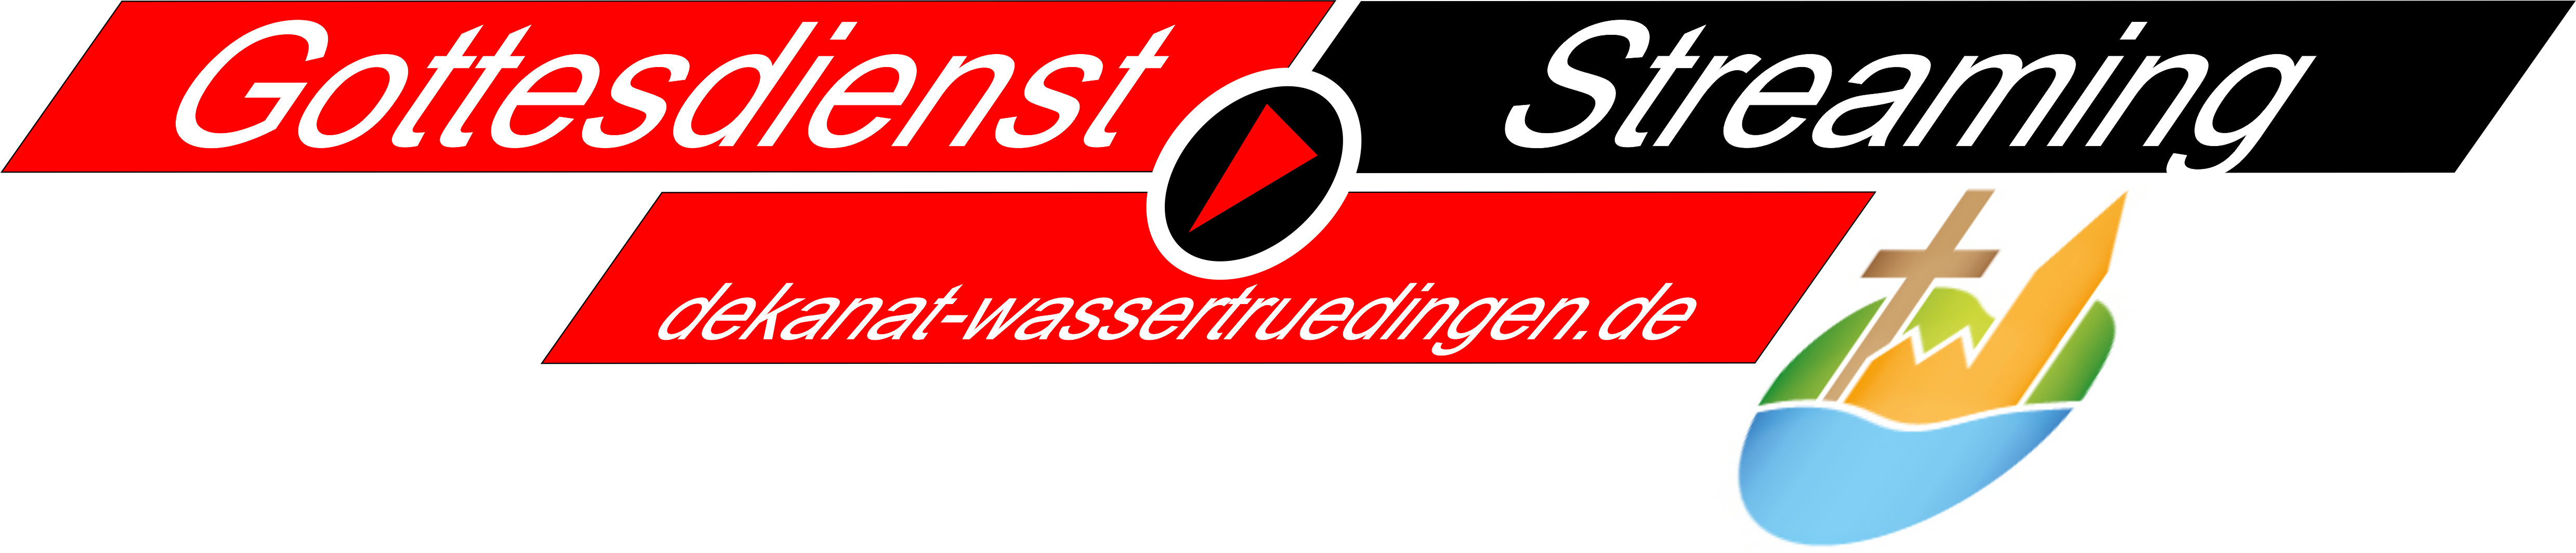 gottesdienst stream logo